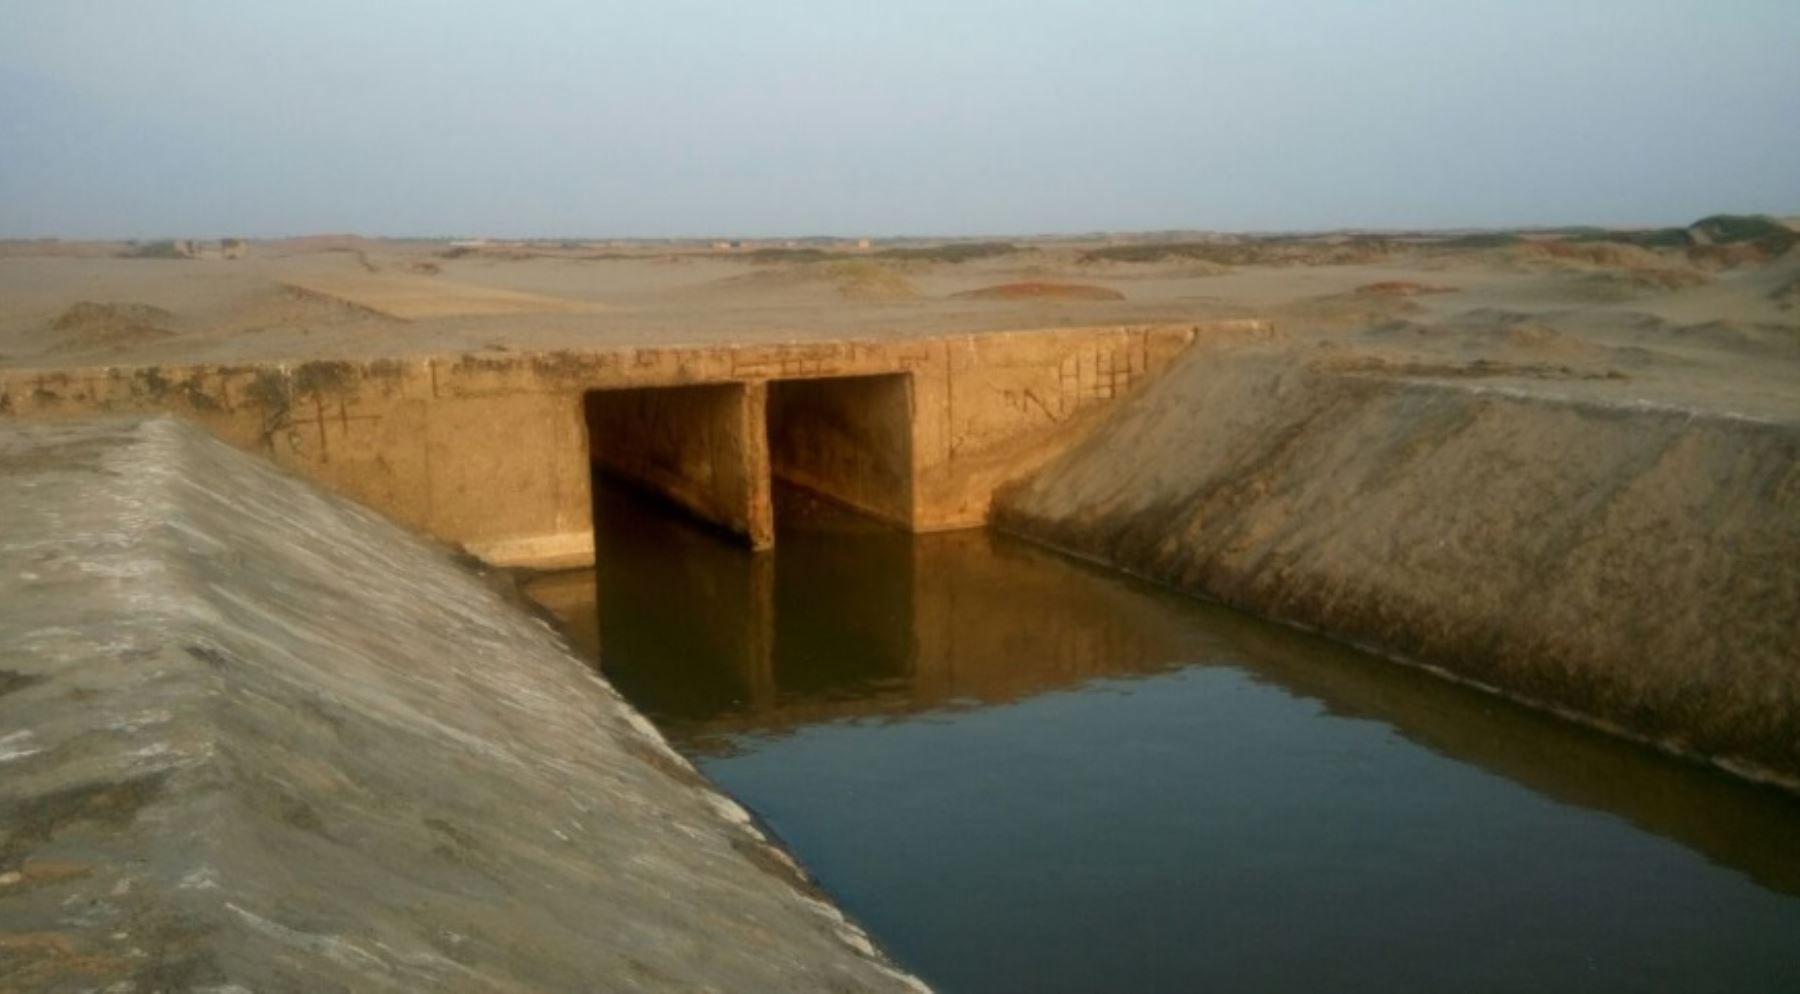 La represa Tinajones, ubicada en el distrito chiclayano de Chongoyape, registra un 40% de su capacidad de almacenamiento, debido a bajas descargas del río por escasas lluvias, lo que obligará a reducir a partir de hoy el abastecimiento de agua para los cultivos de arroz. ANDINA/Difusión